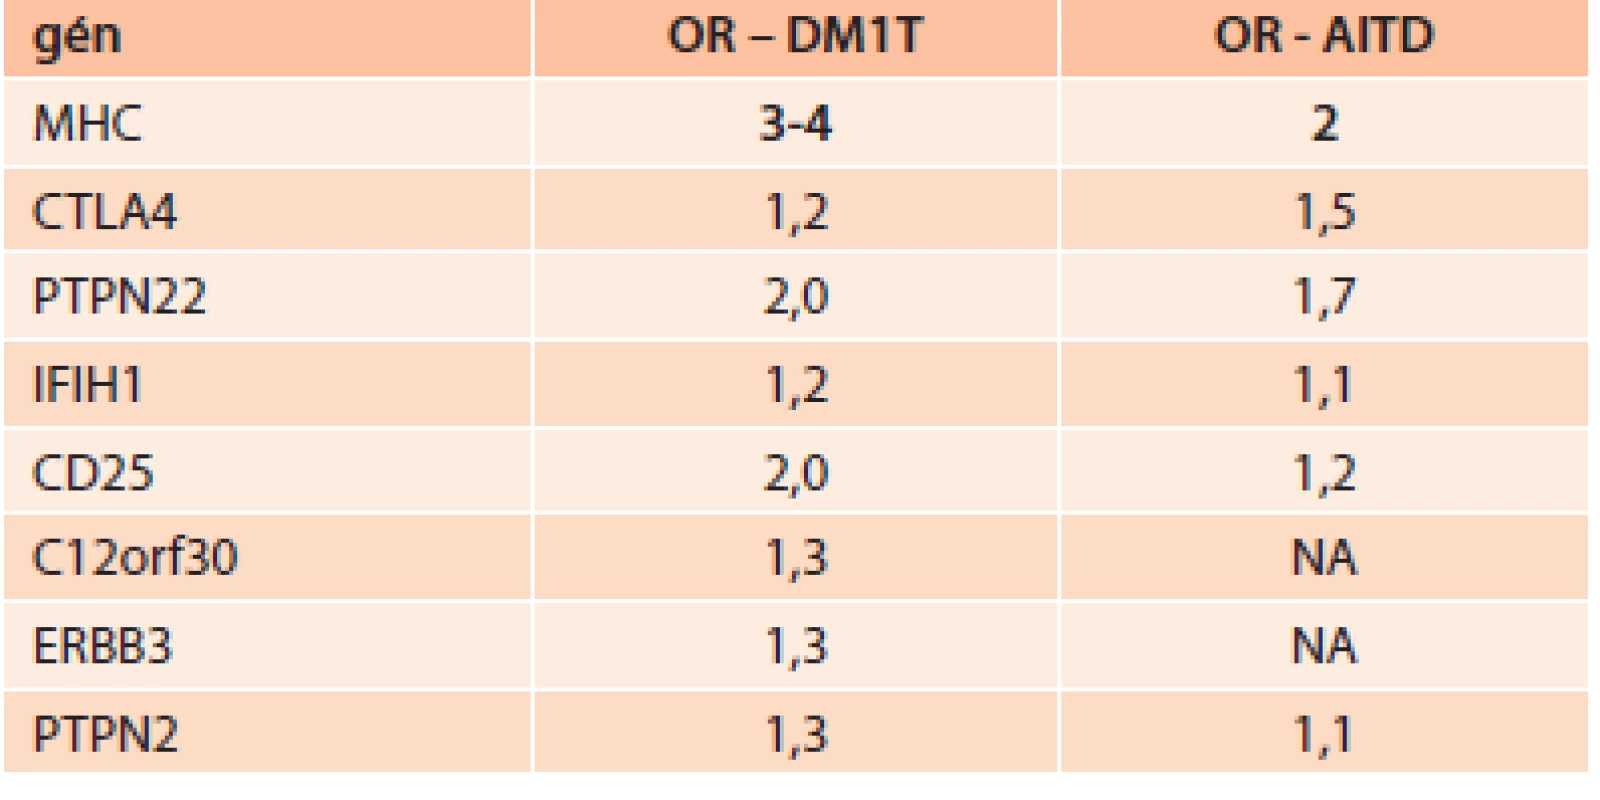 Imunogenetická predispozícia niektorých génov pre DM1T a AITD